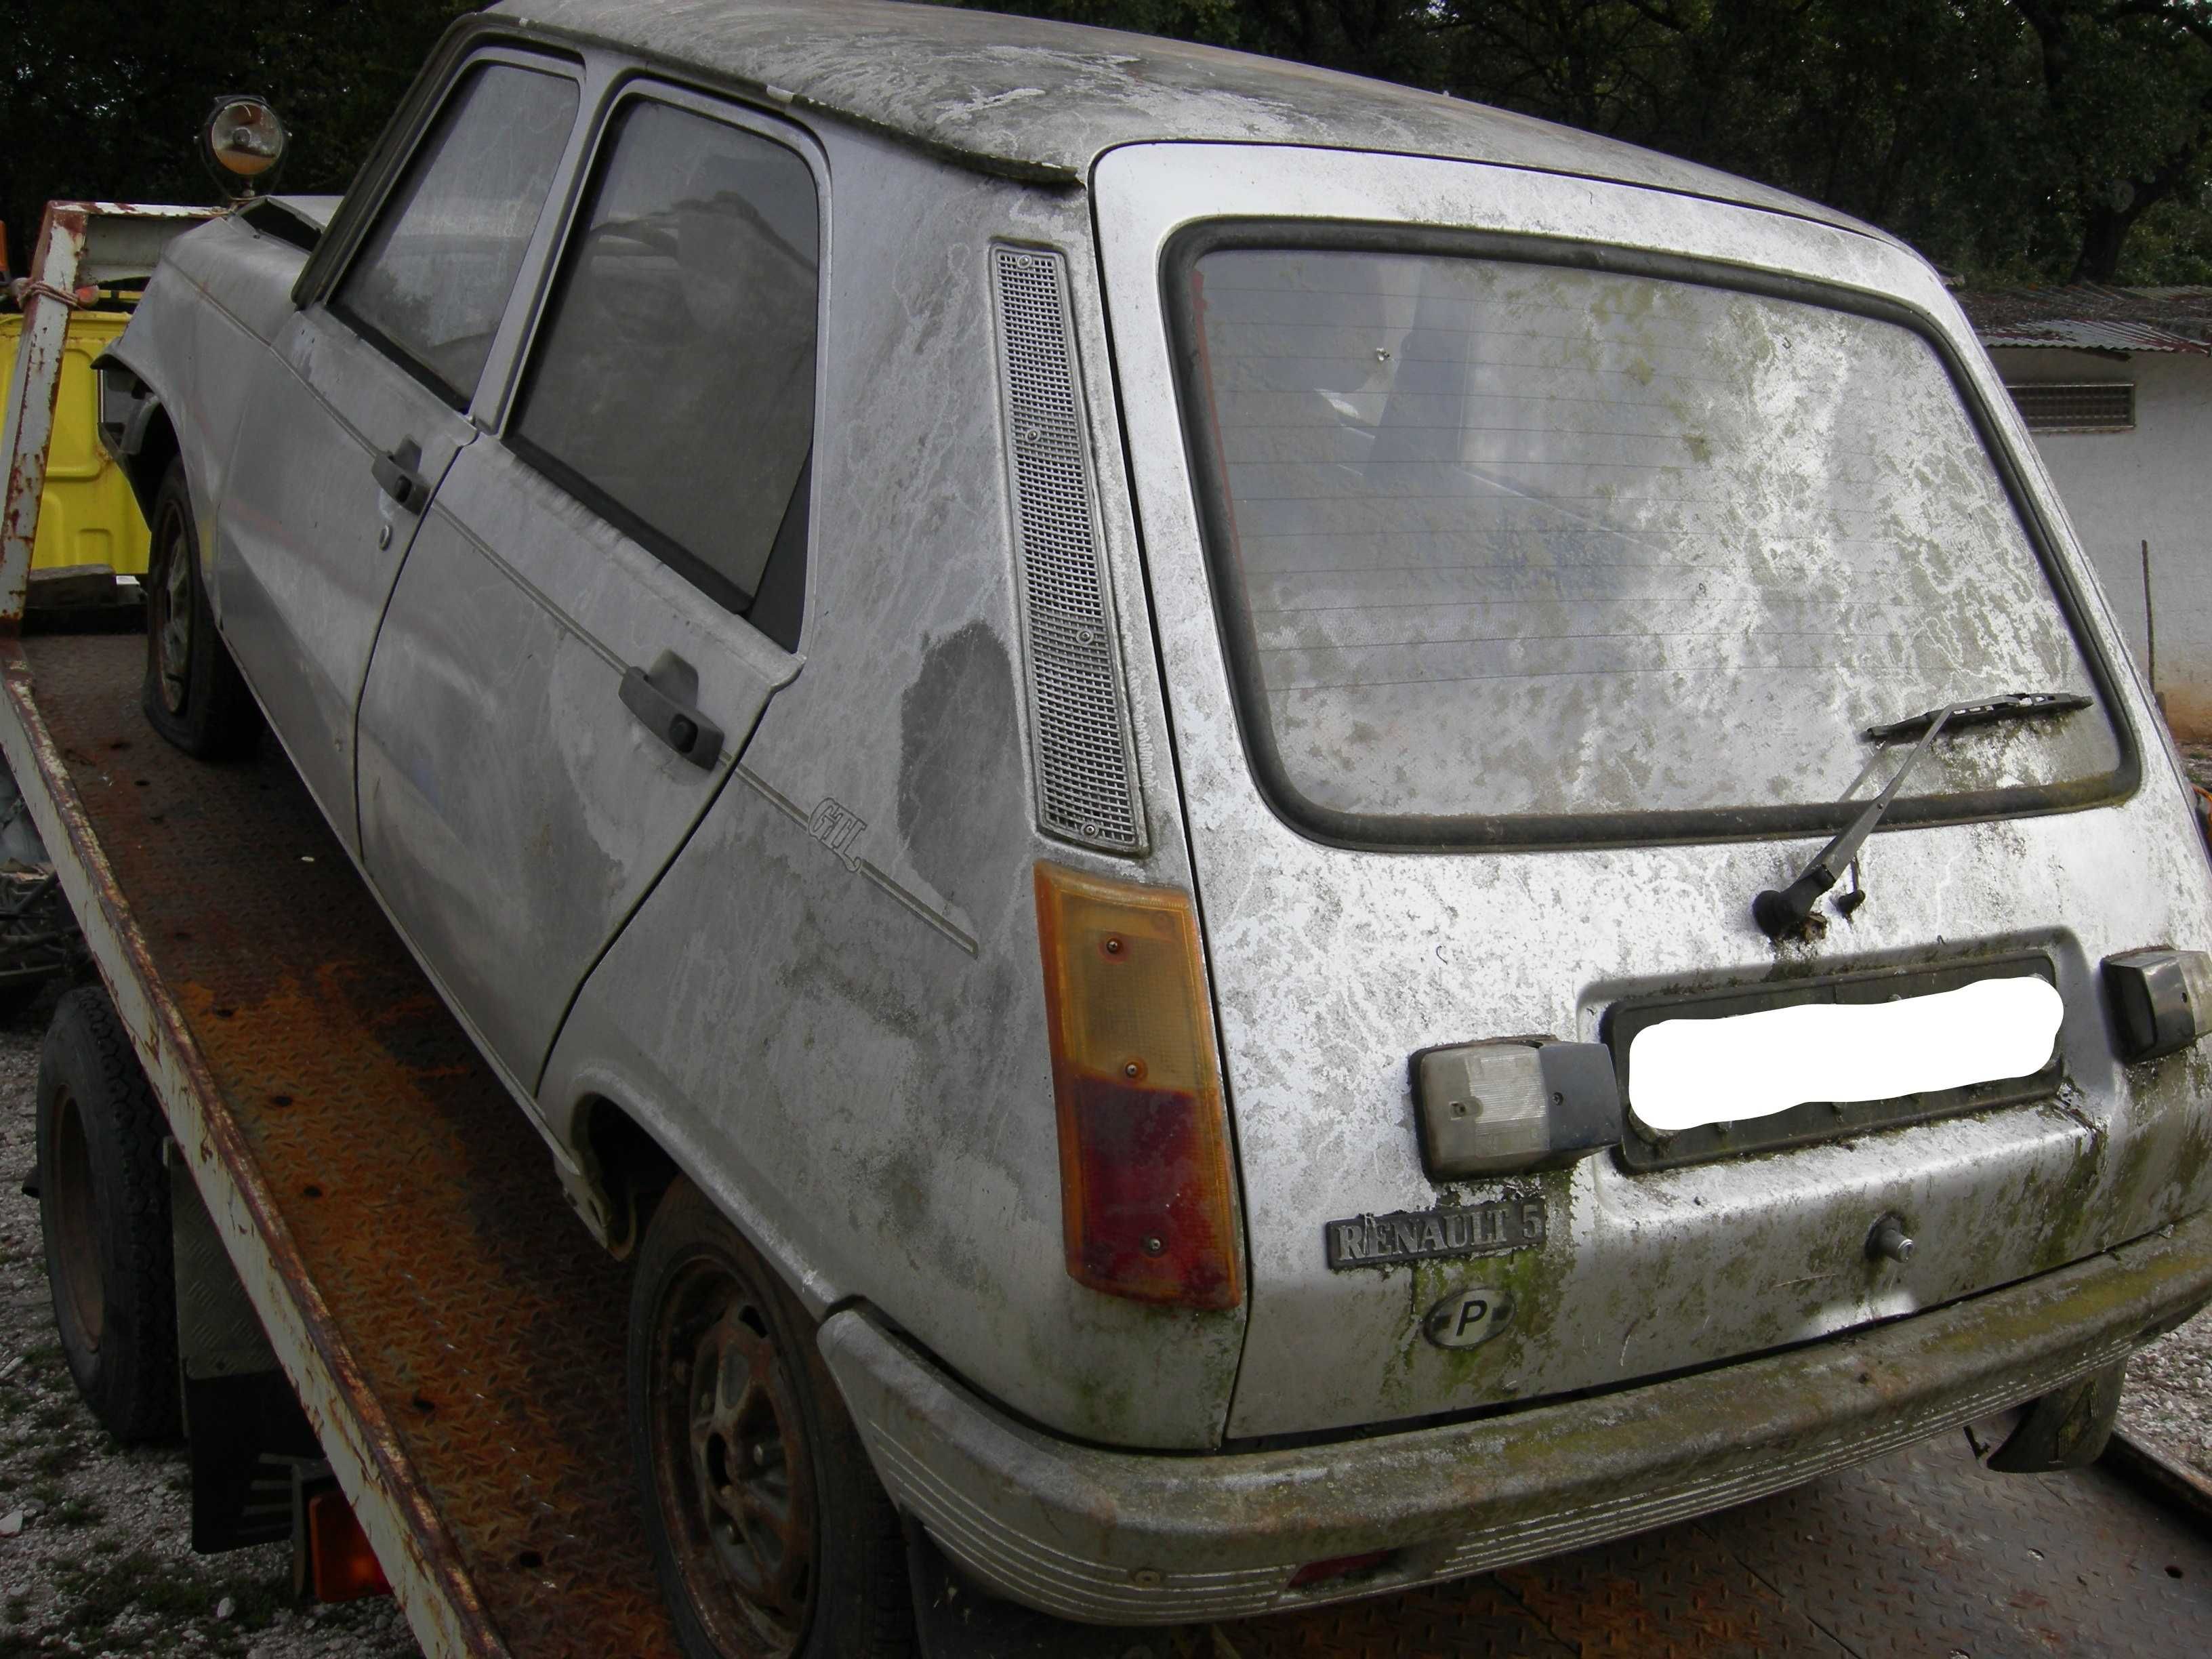 Renault 5 GTL Laureate 1985 para peças